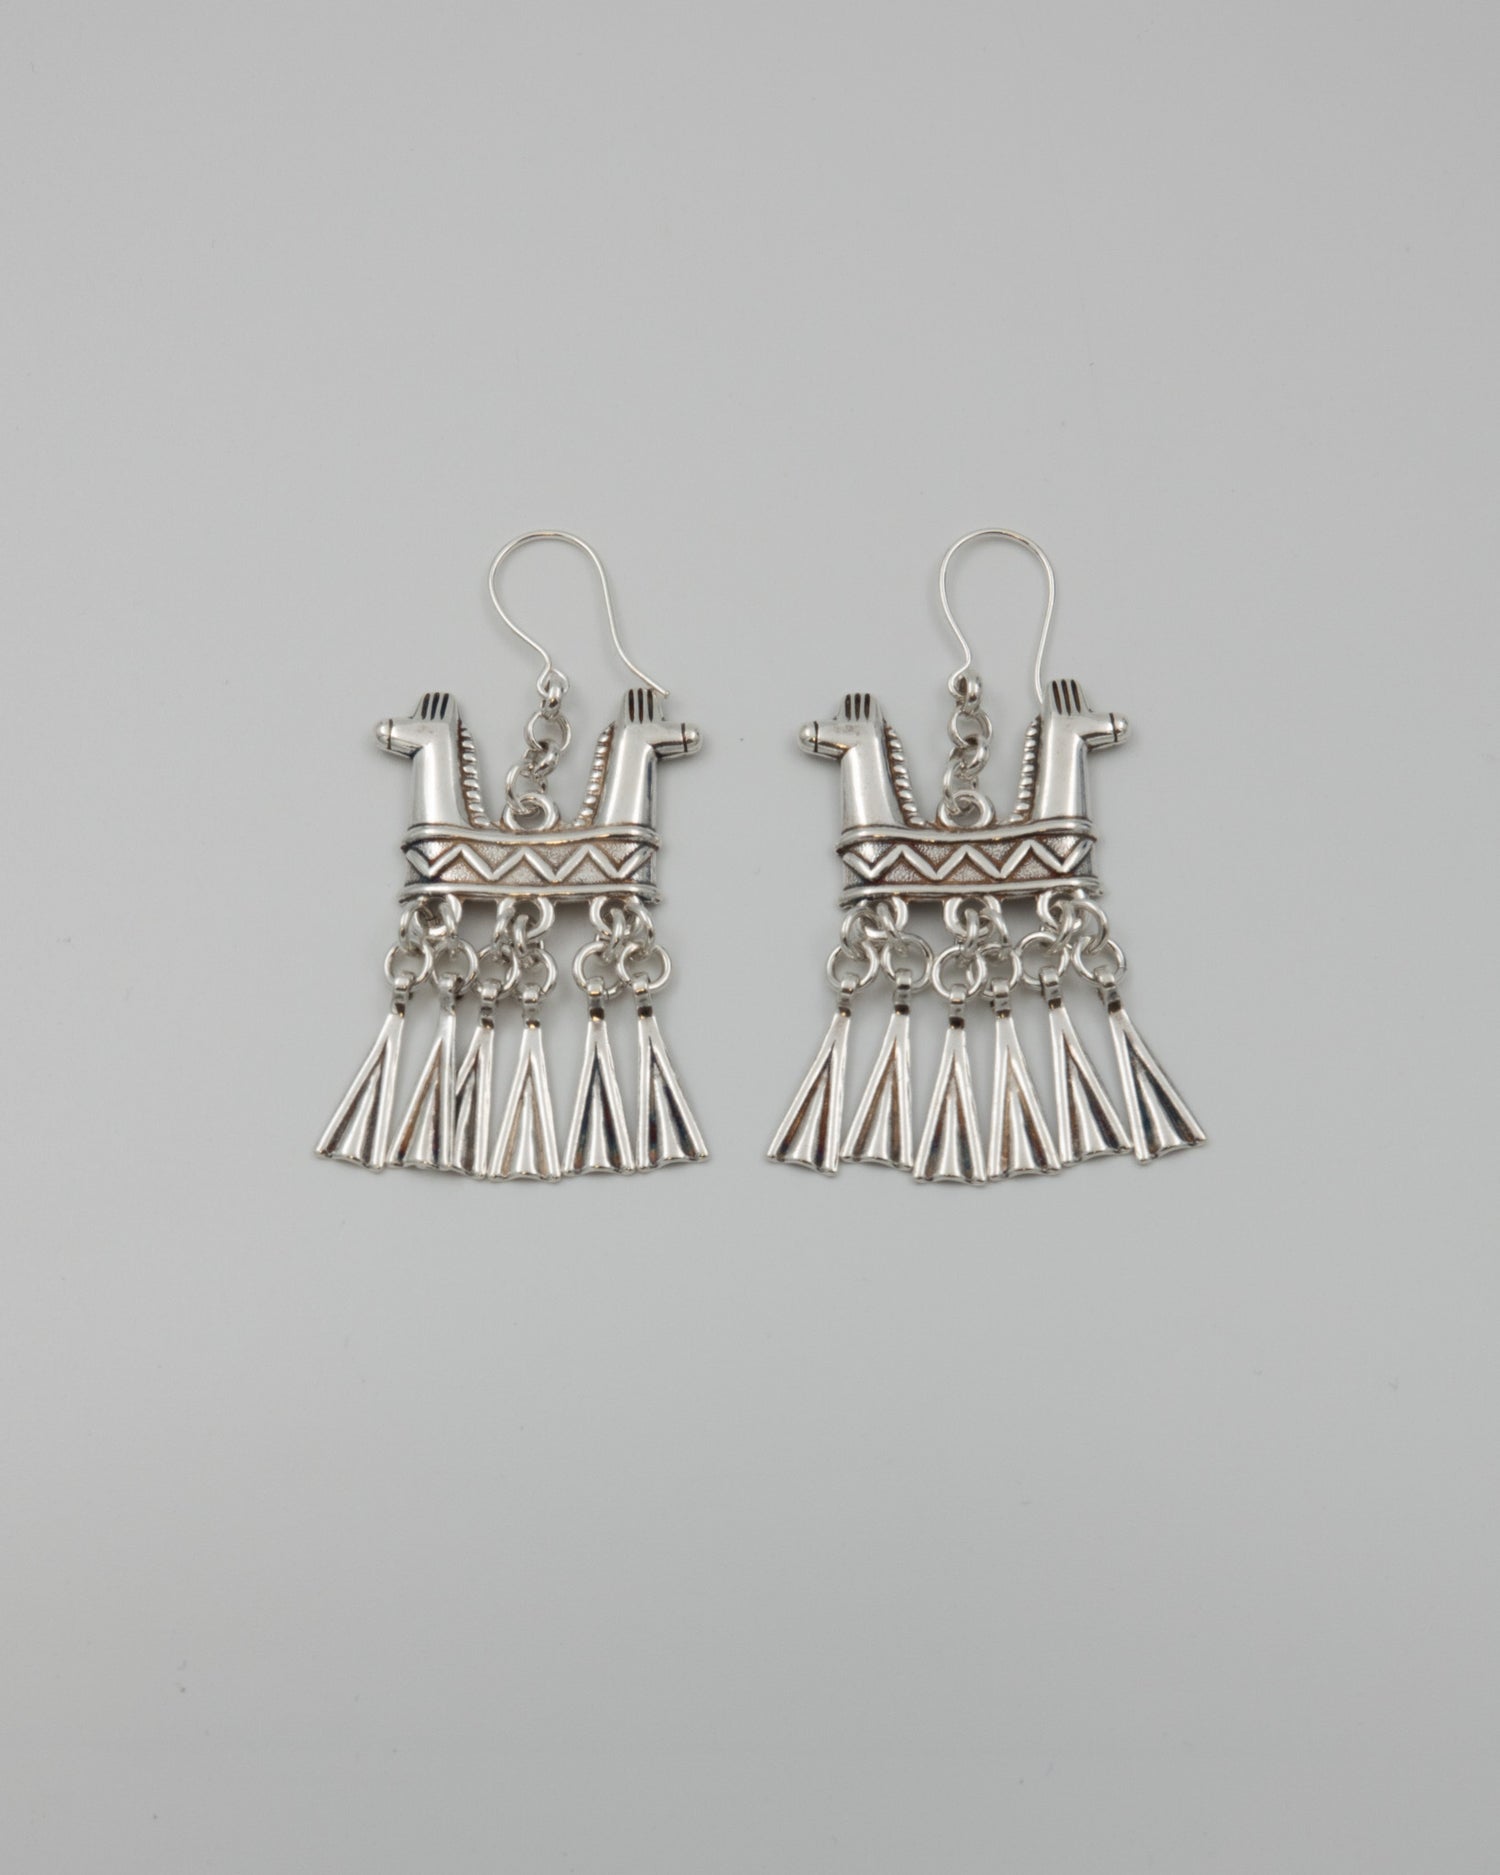 Kept Two-headed horse earrings silver